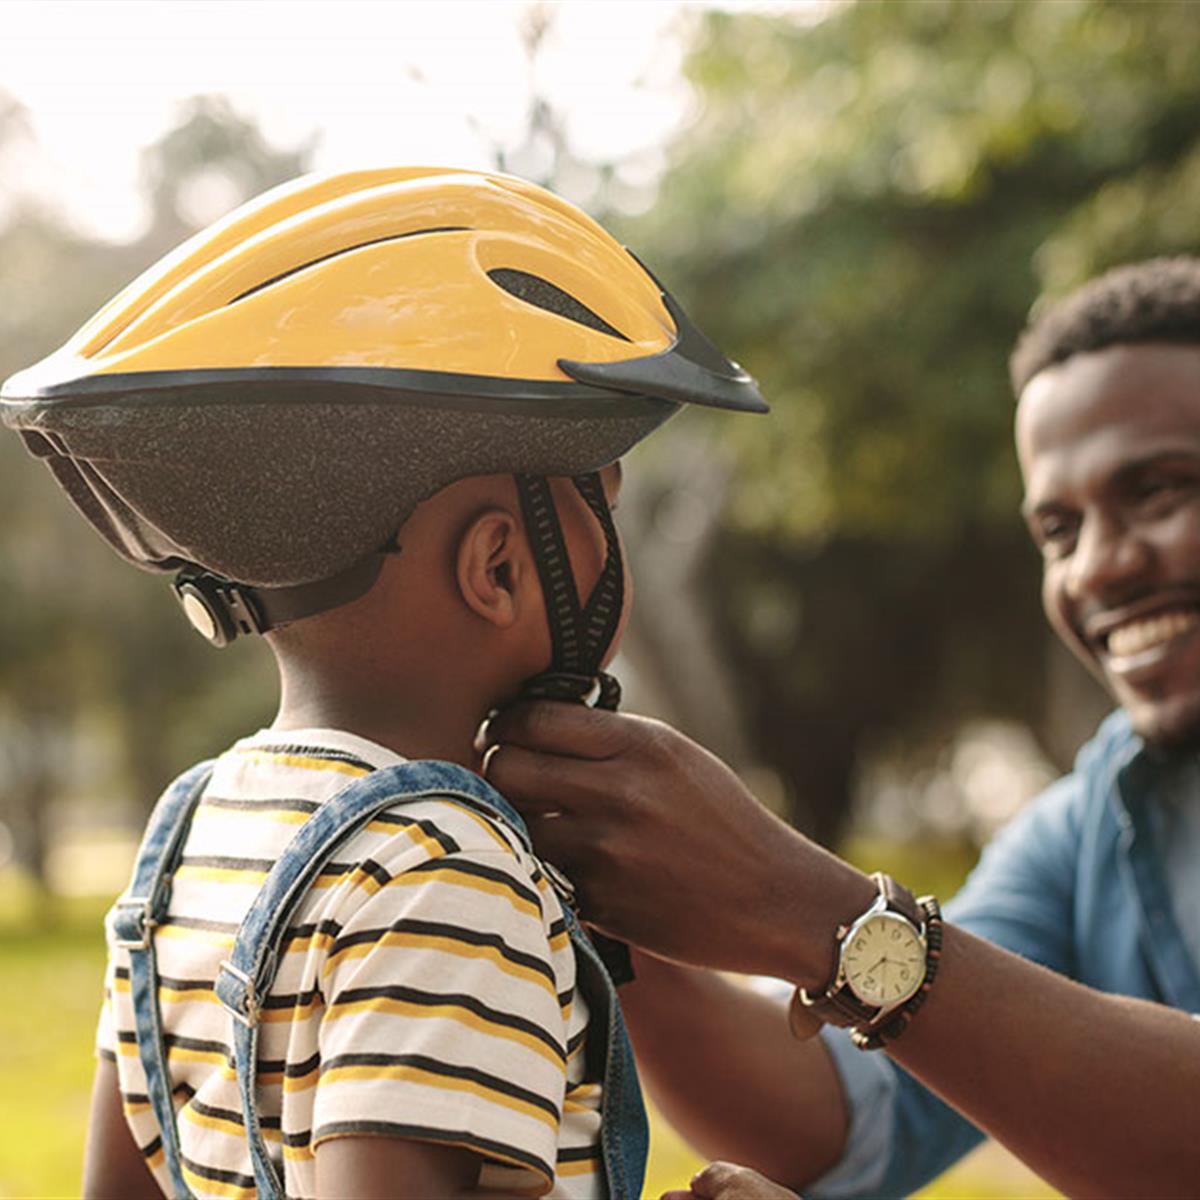 pellizco ansiedad Contribución Los cascos para bicicleta: qué deben saber los padres - HealthyChildren.org